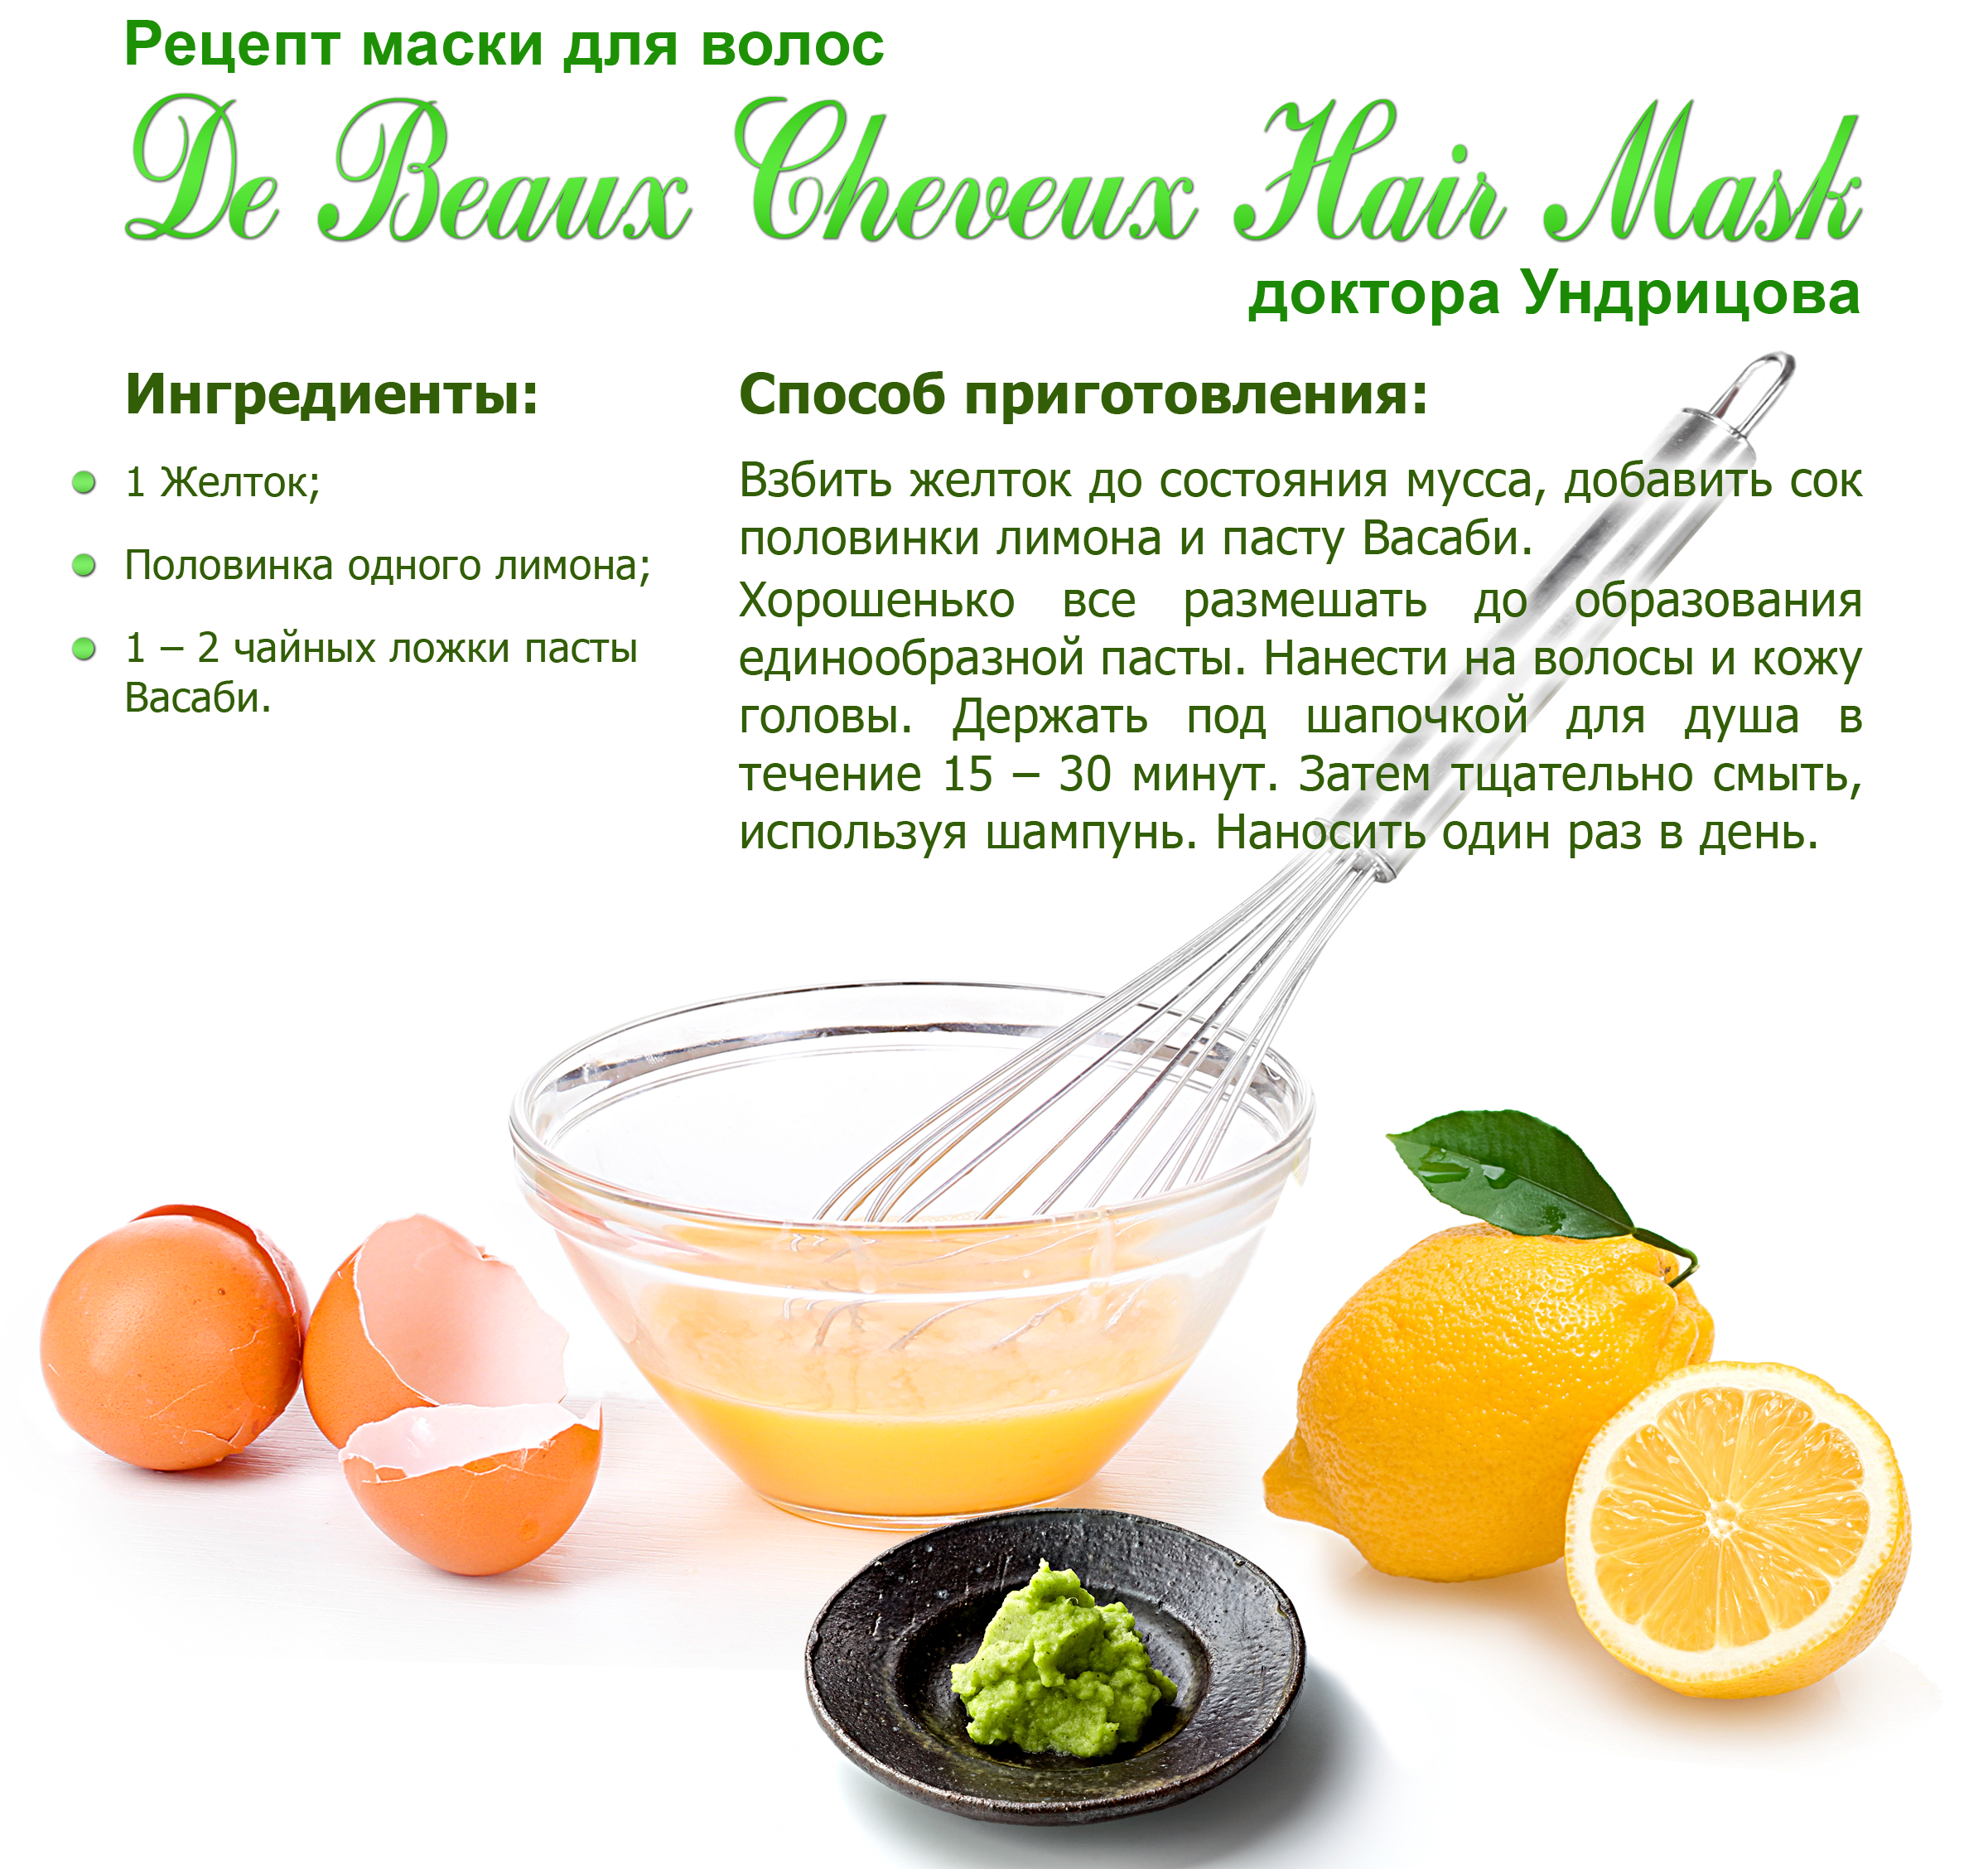 Рецепты дрожжевых масок для волос